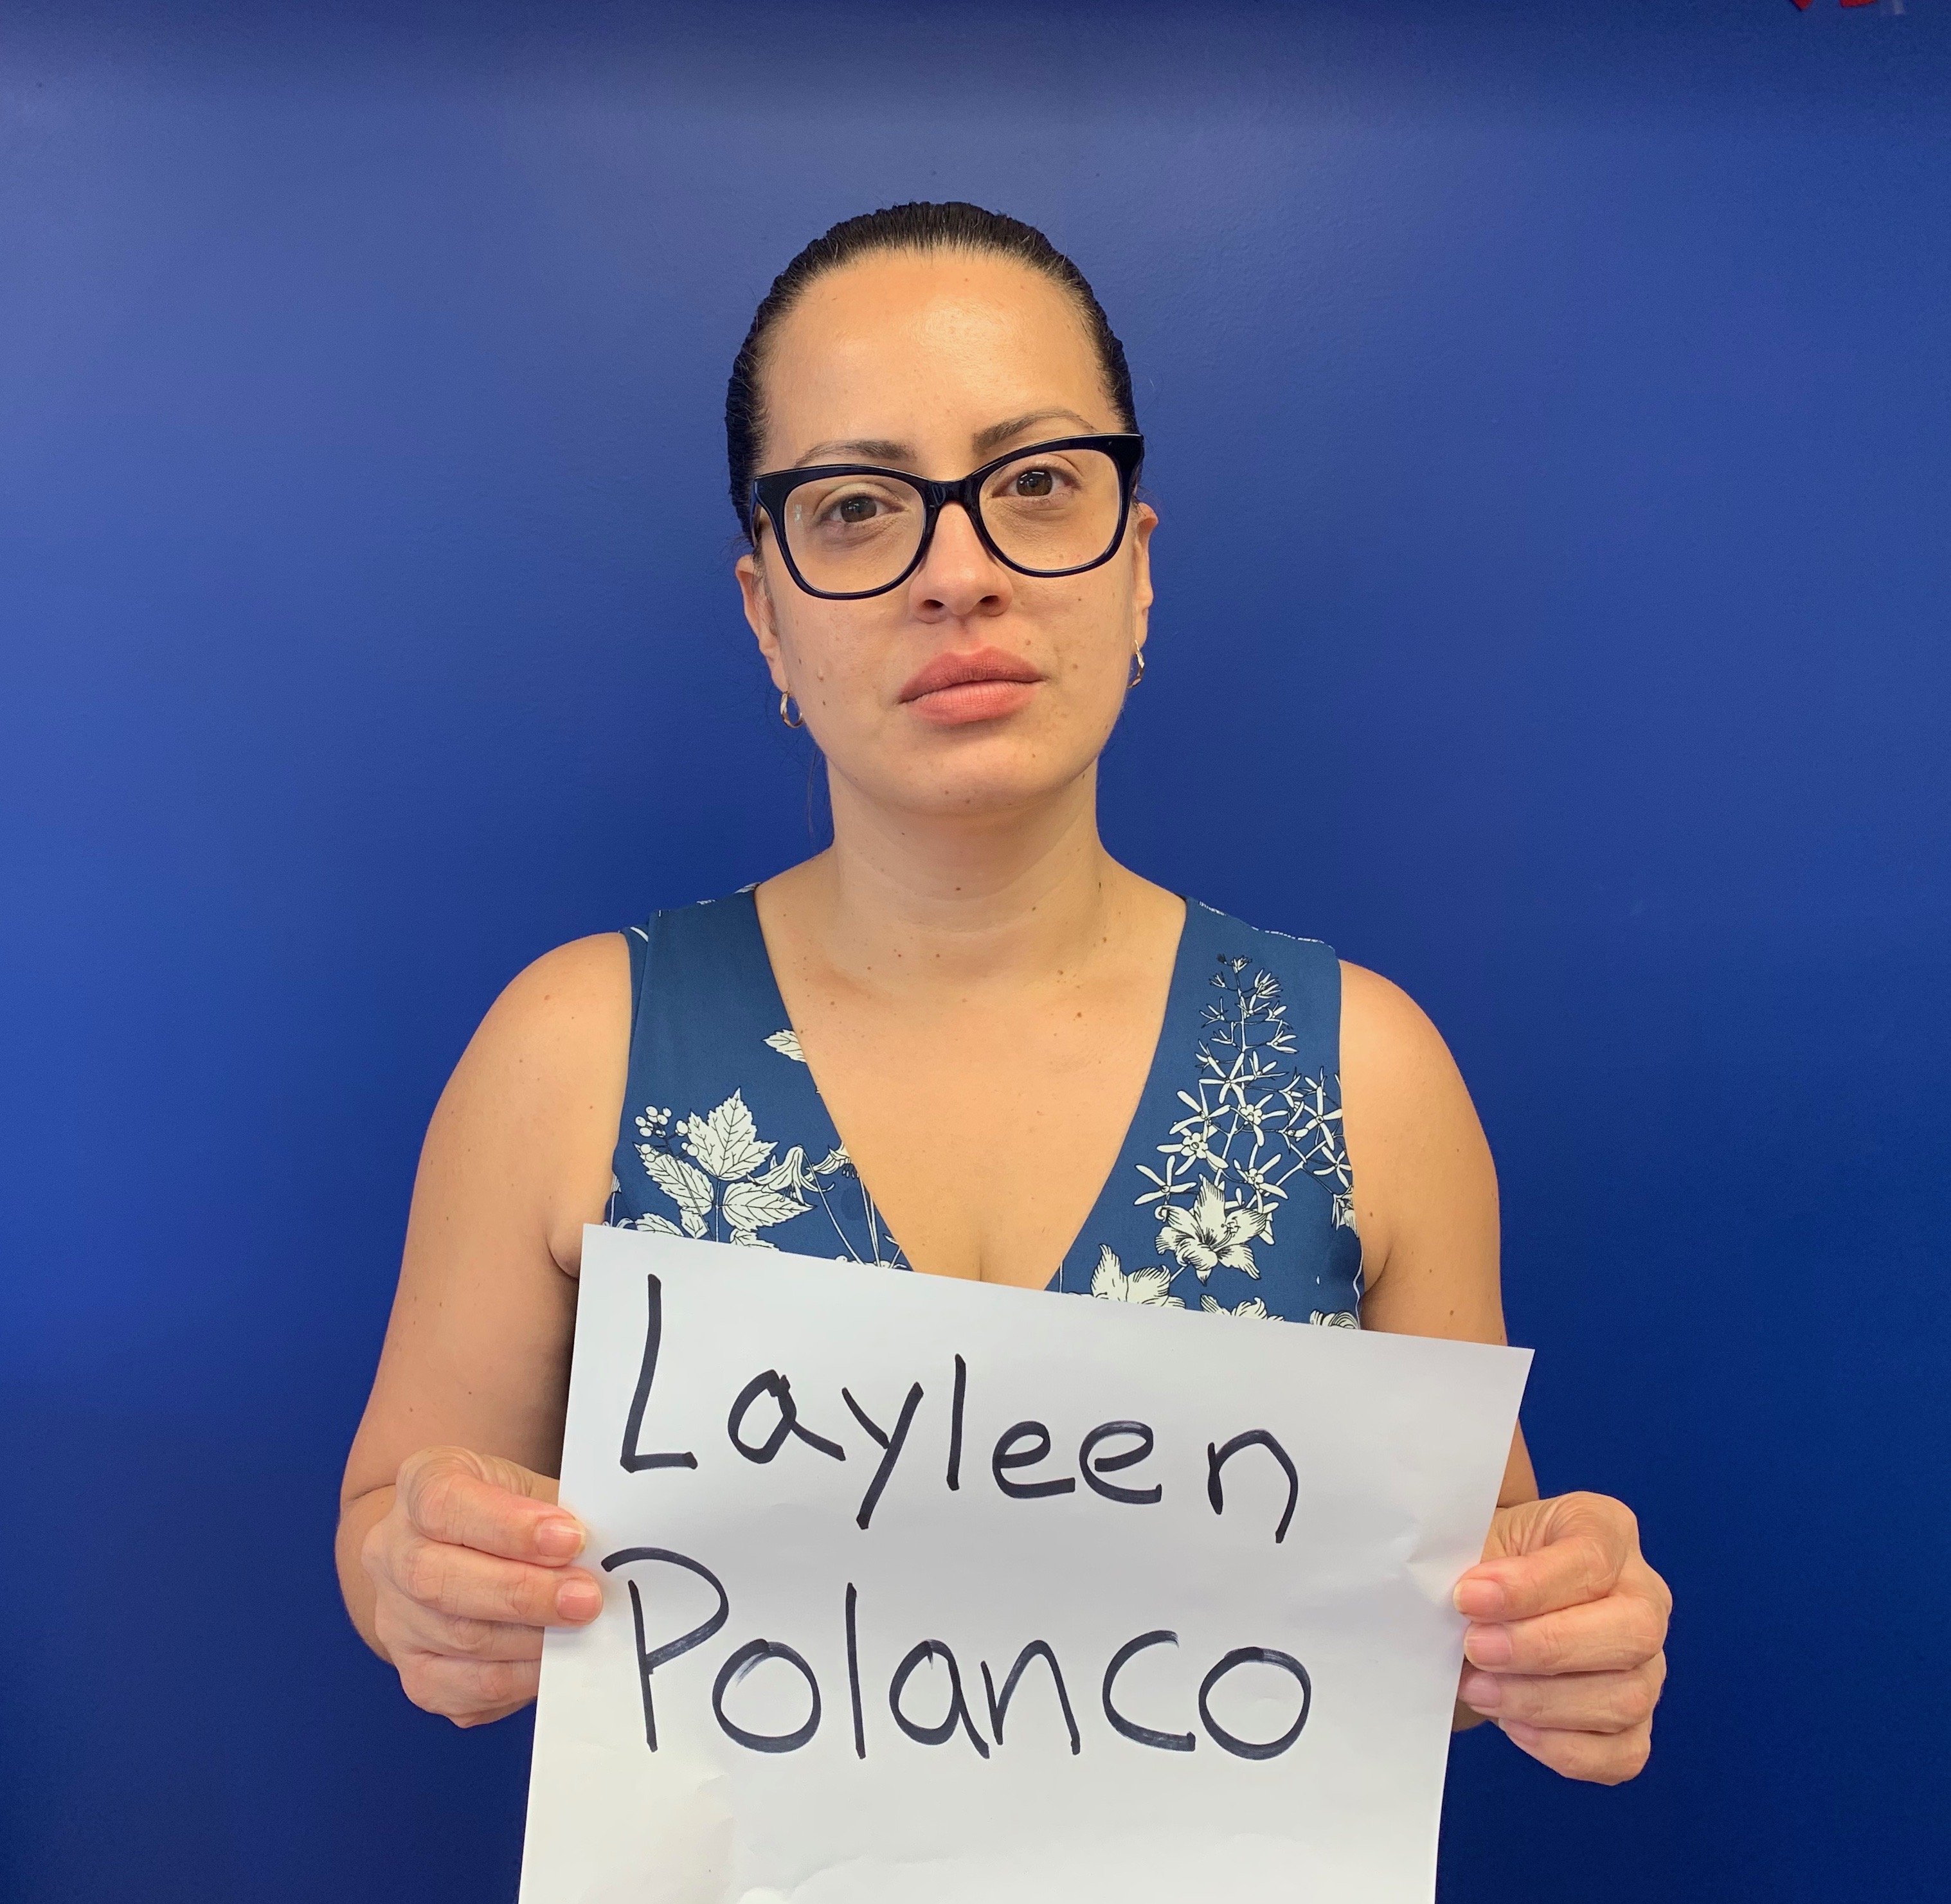 Layleen Polanco